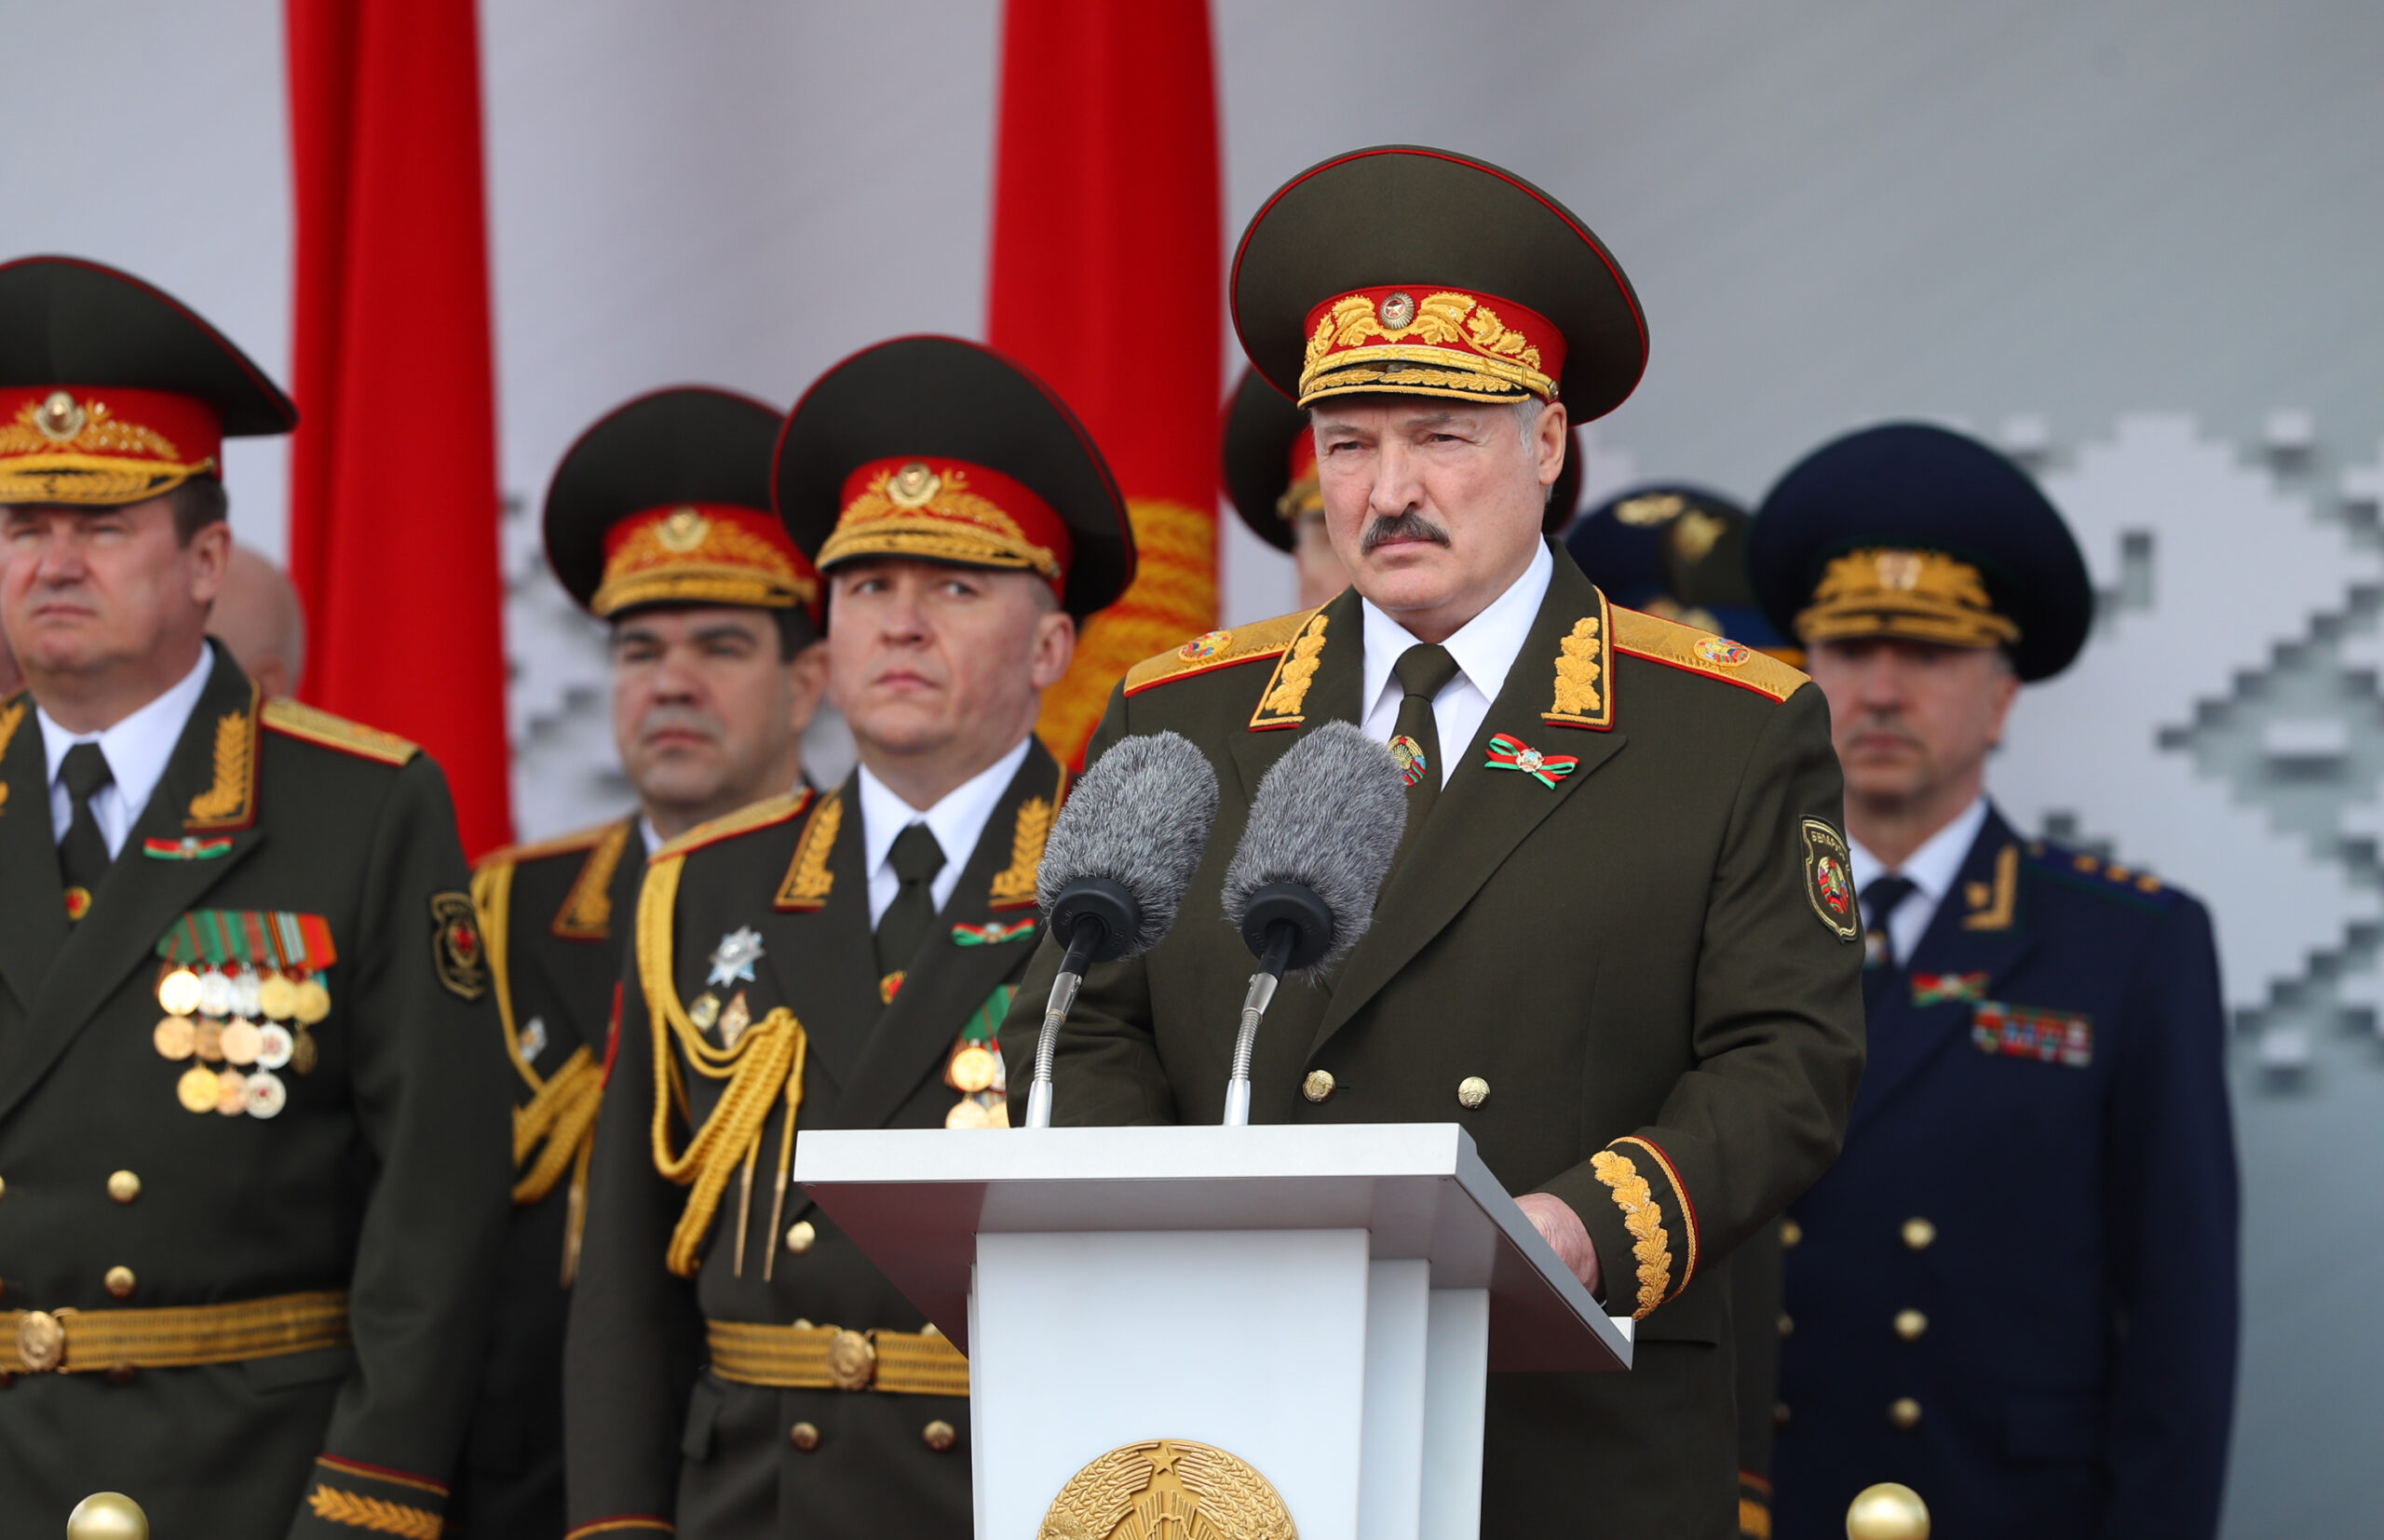 Республика Беларусь, Минск, Александр Лукашенко, военная форма